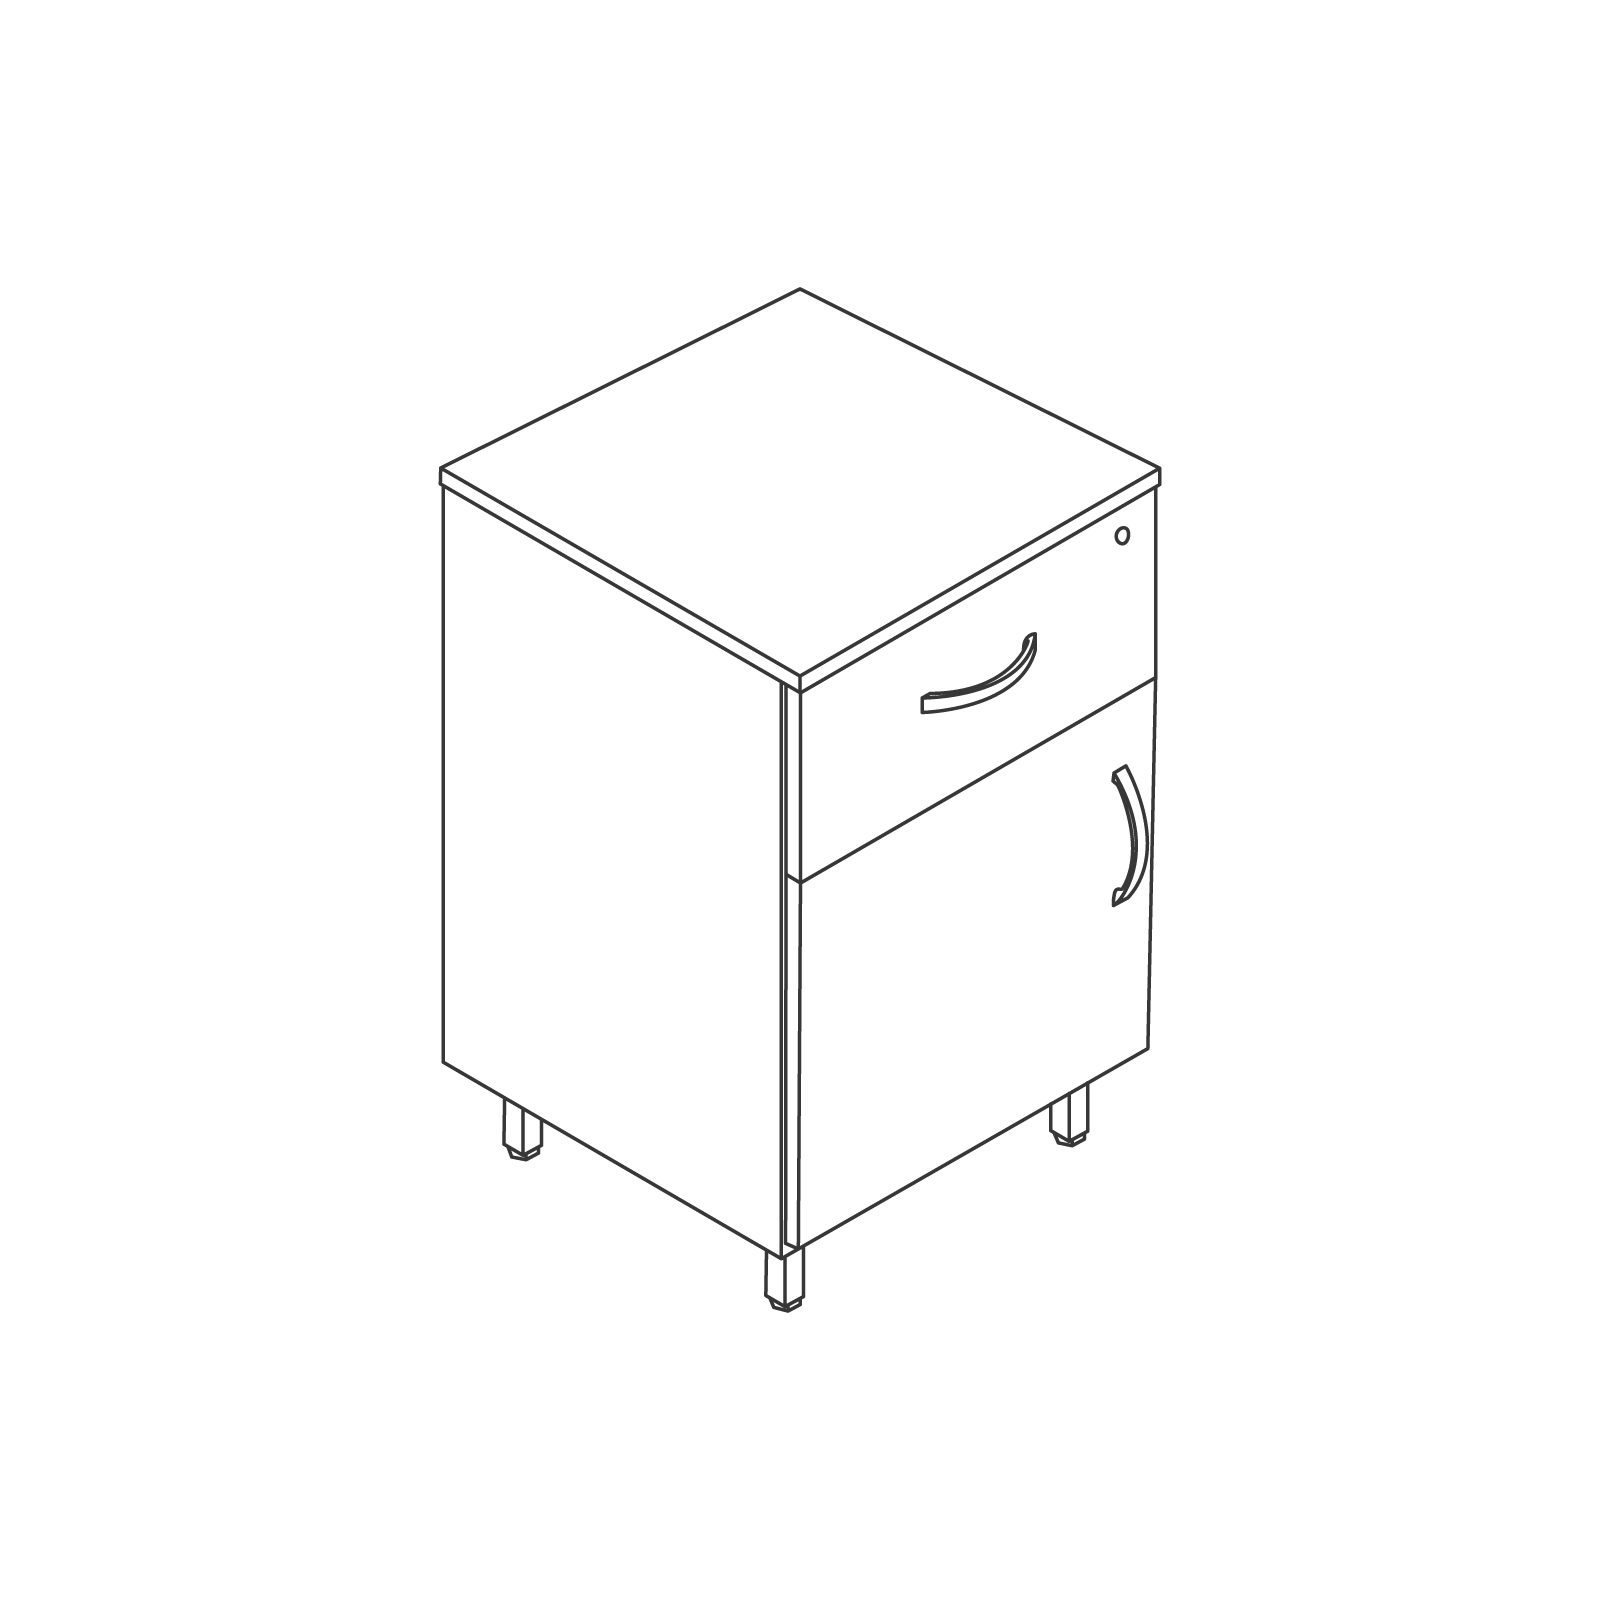 A line drawing - Nemschoff Bedside Cabinet–Metal Legs